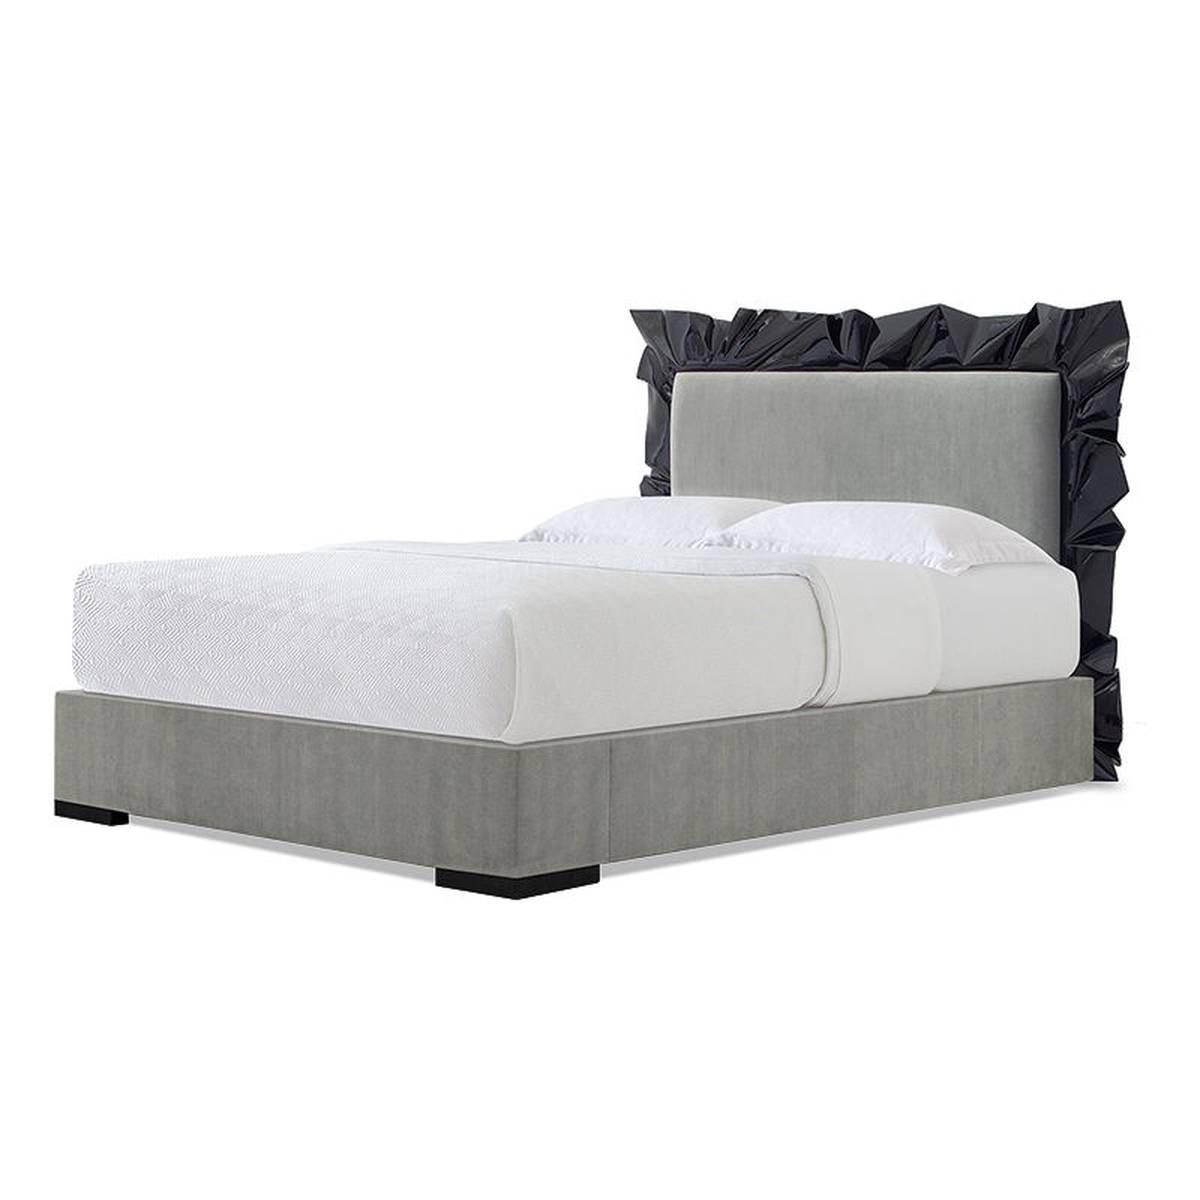 Кровать с мягким изголовьем Ravenna bed из США фабрики CHRISTOPHER GUY